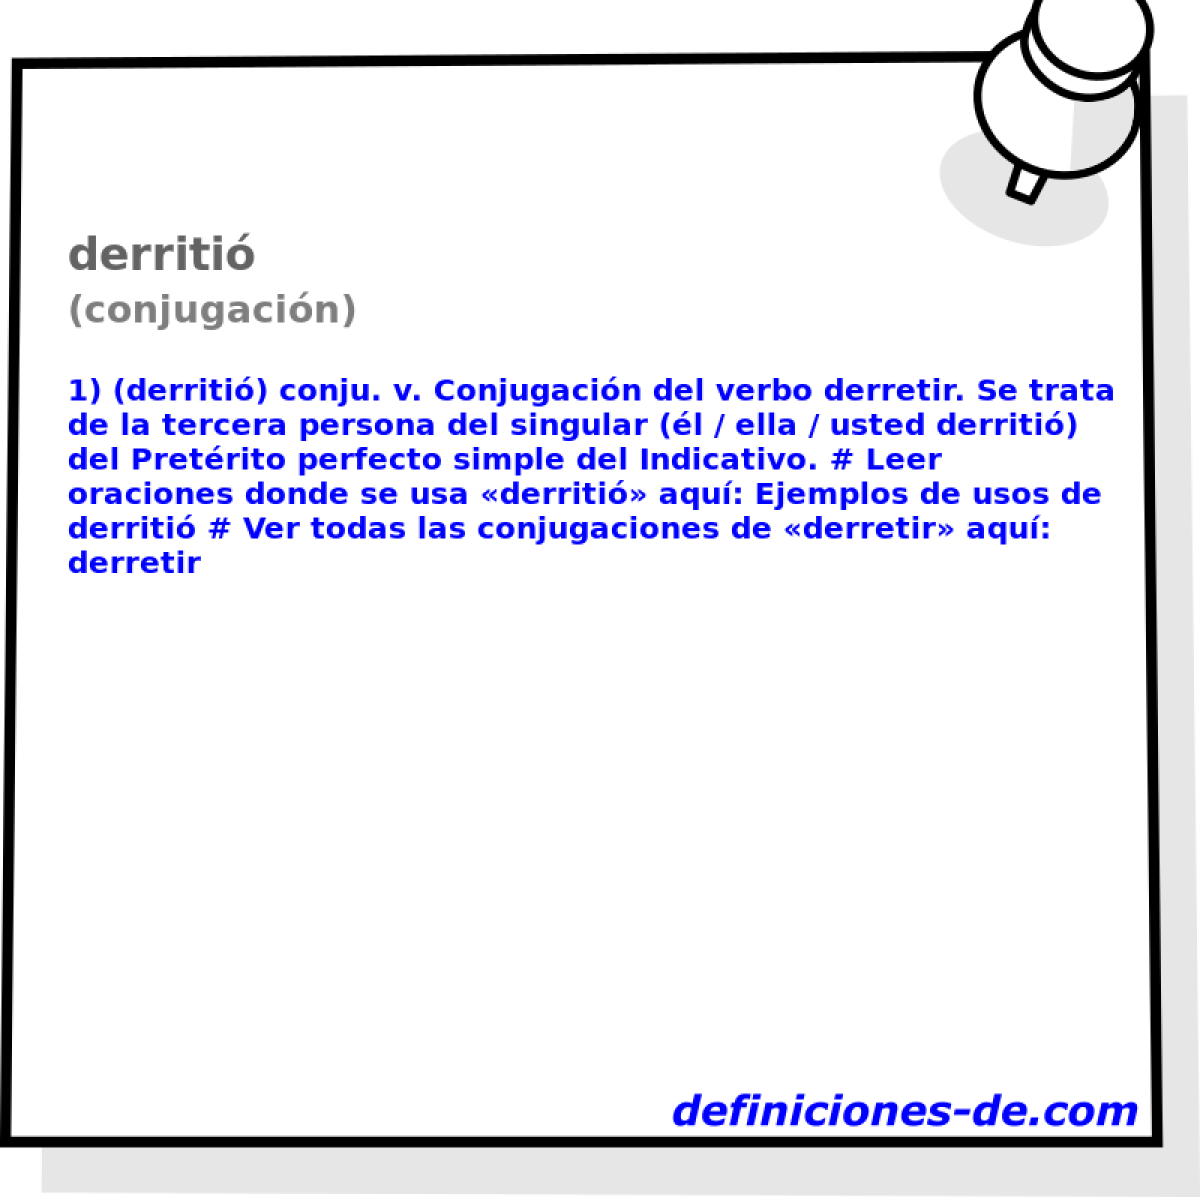 derriti (conjugacin)